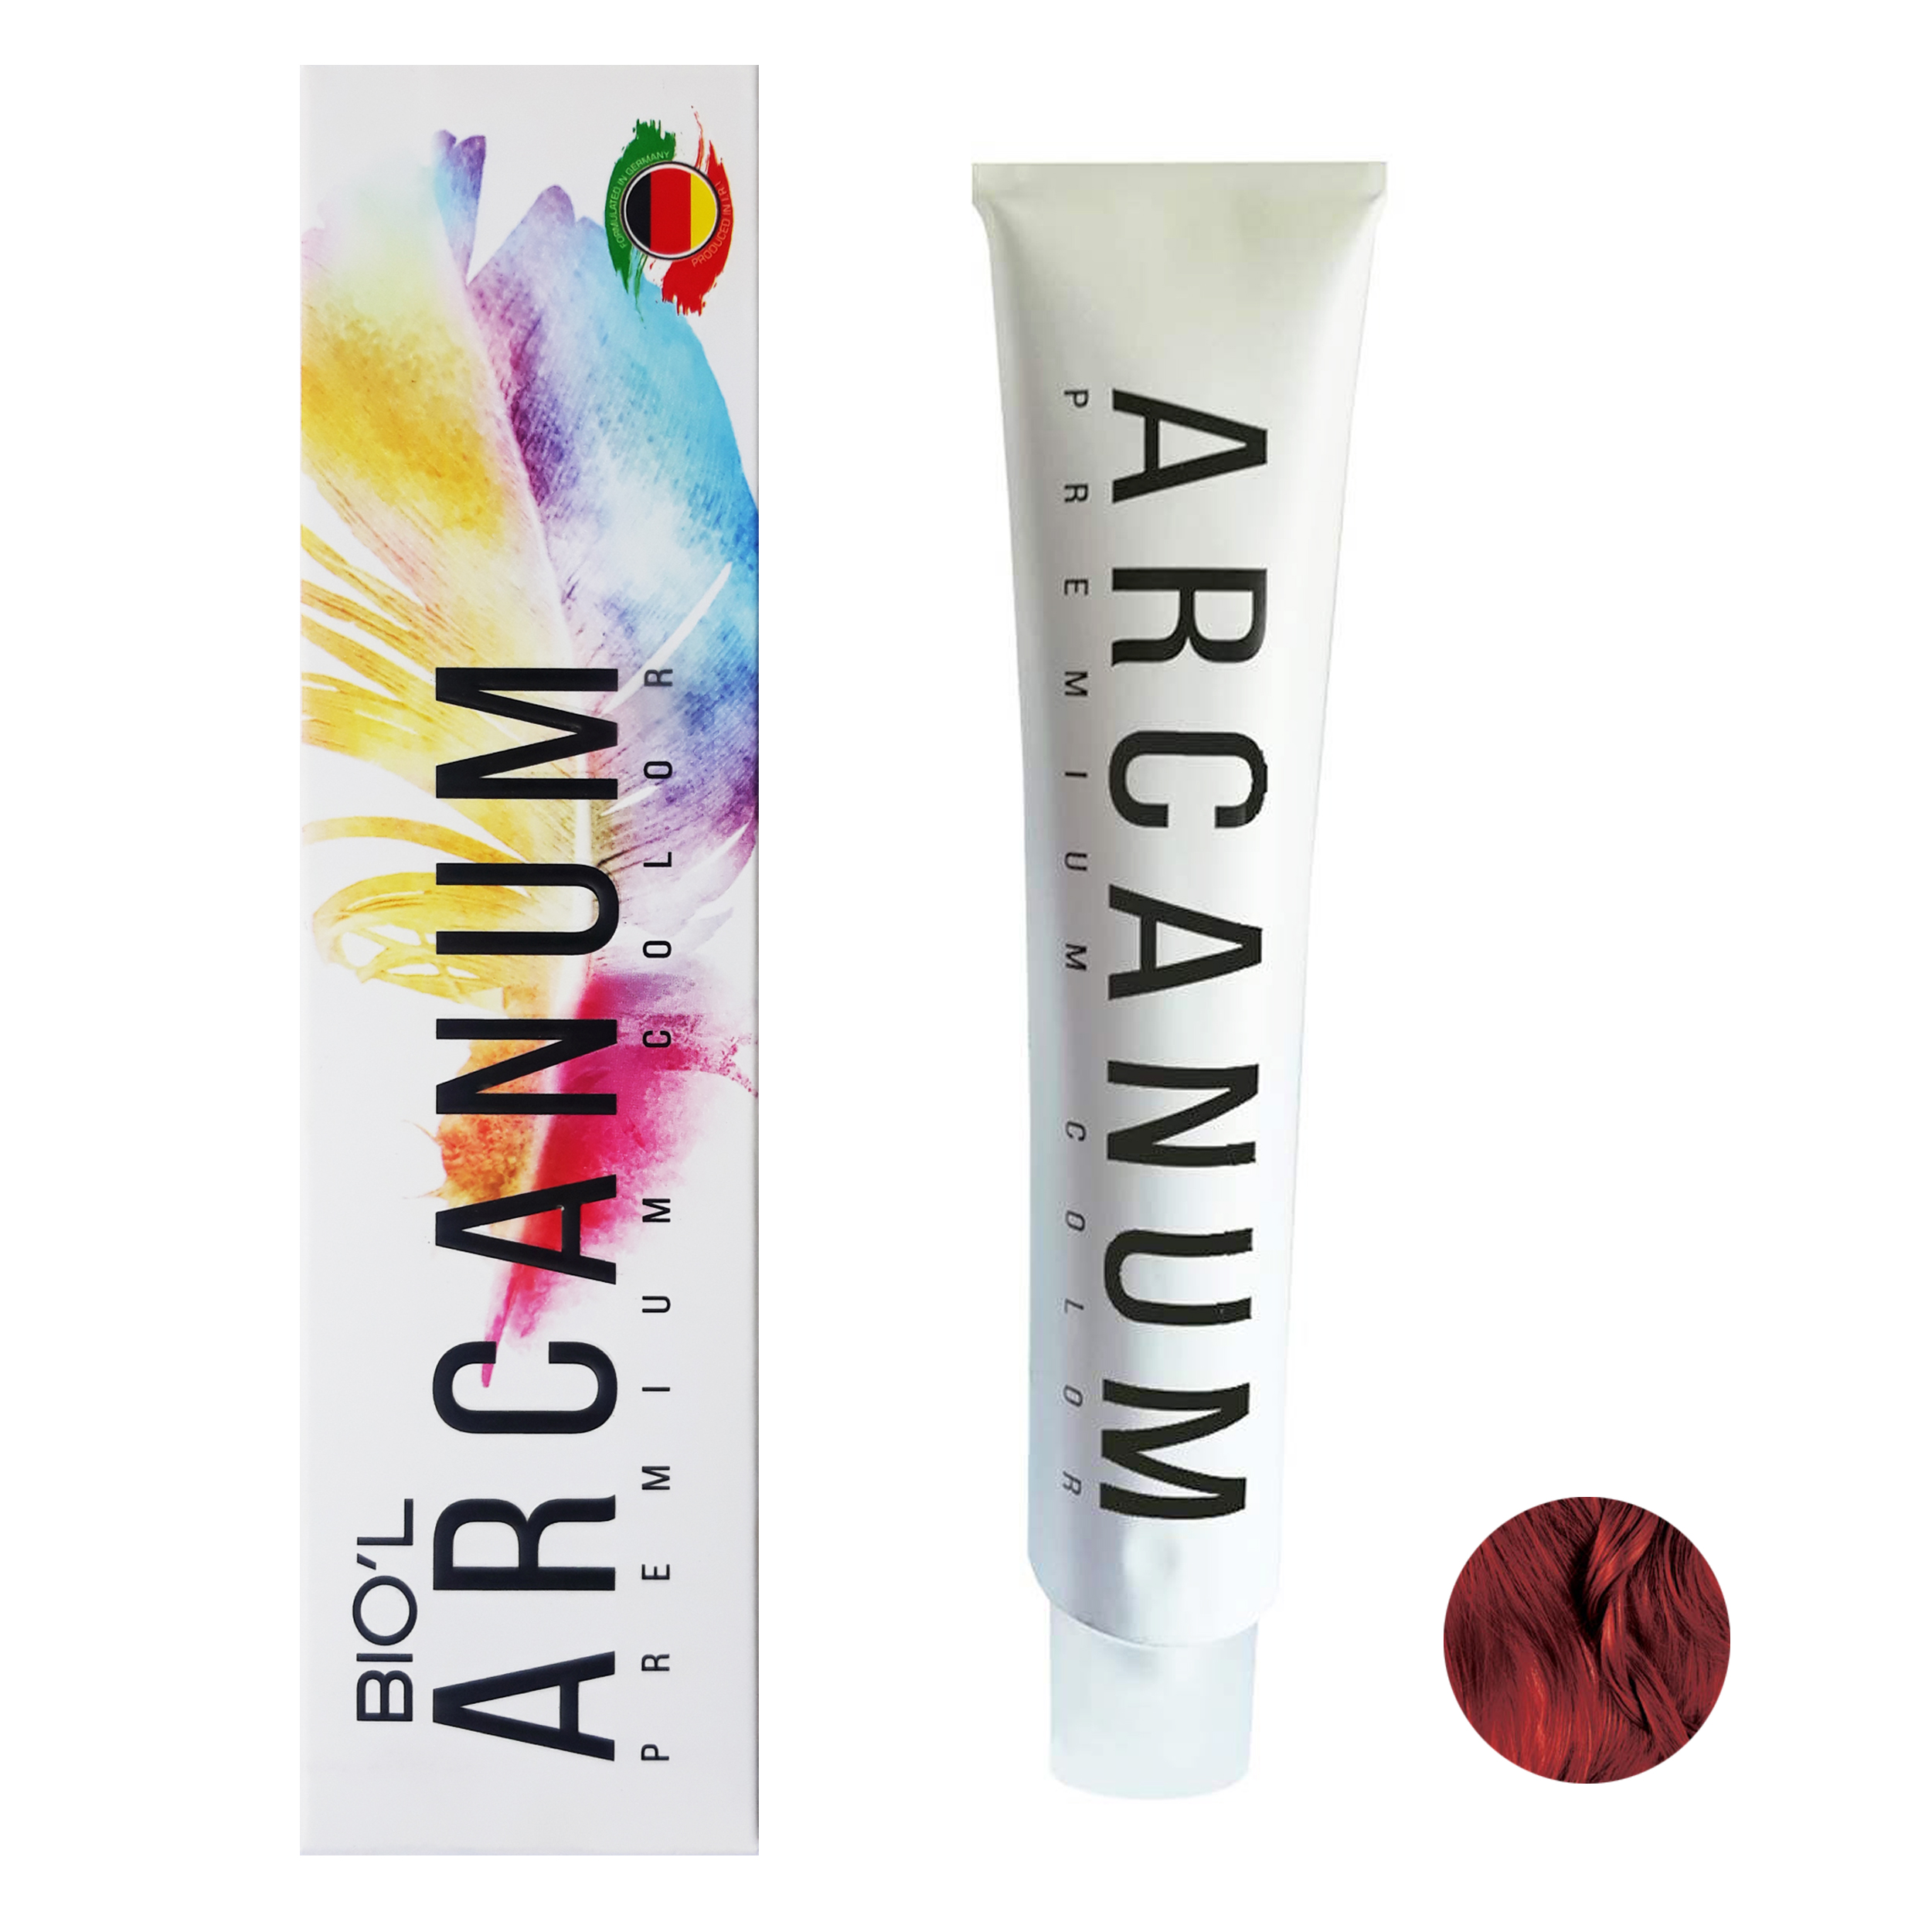  رنگ مو بیول مدل Arcanum شماره 6.59 حجم 120 میلی لیتر رنگ بلوند جگری تیره -  - 2